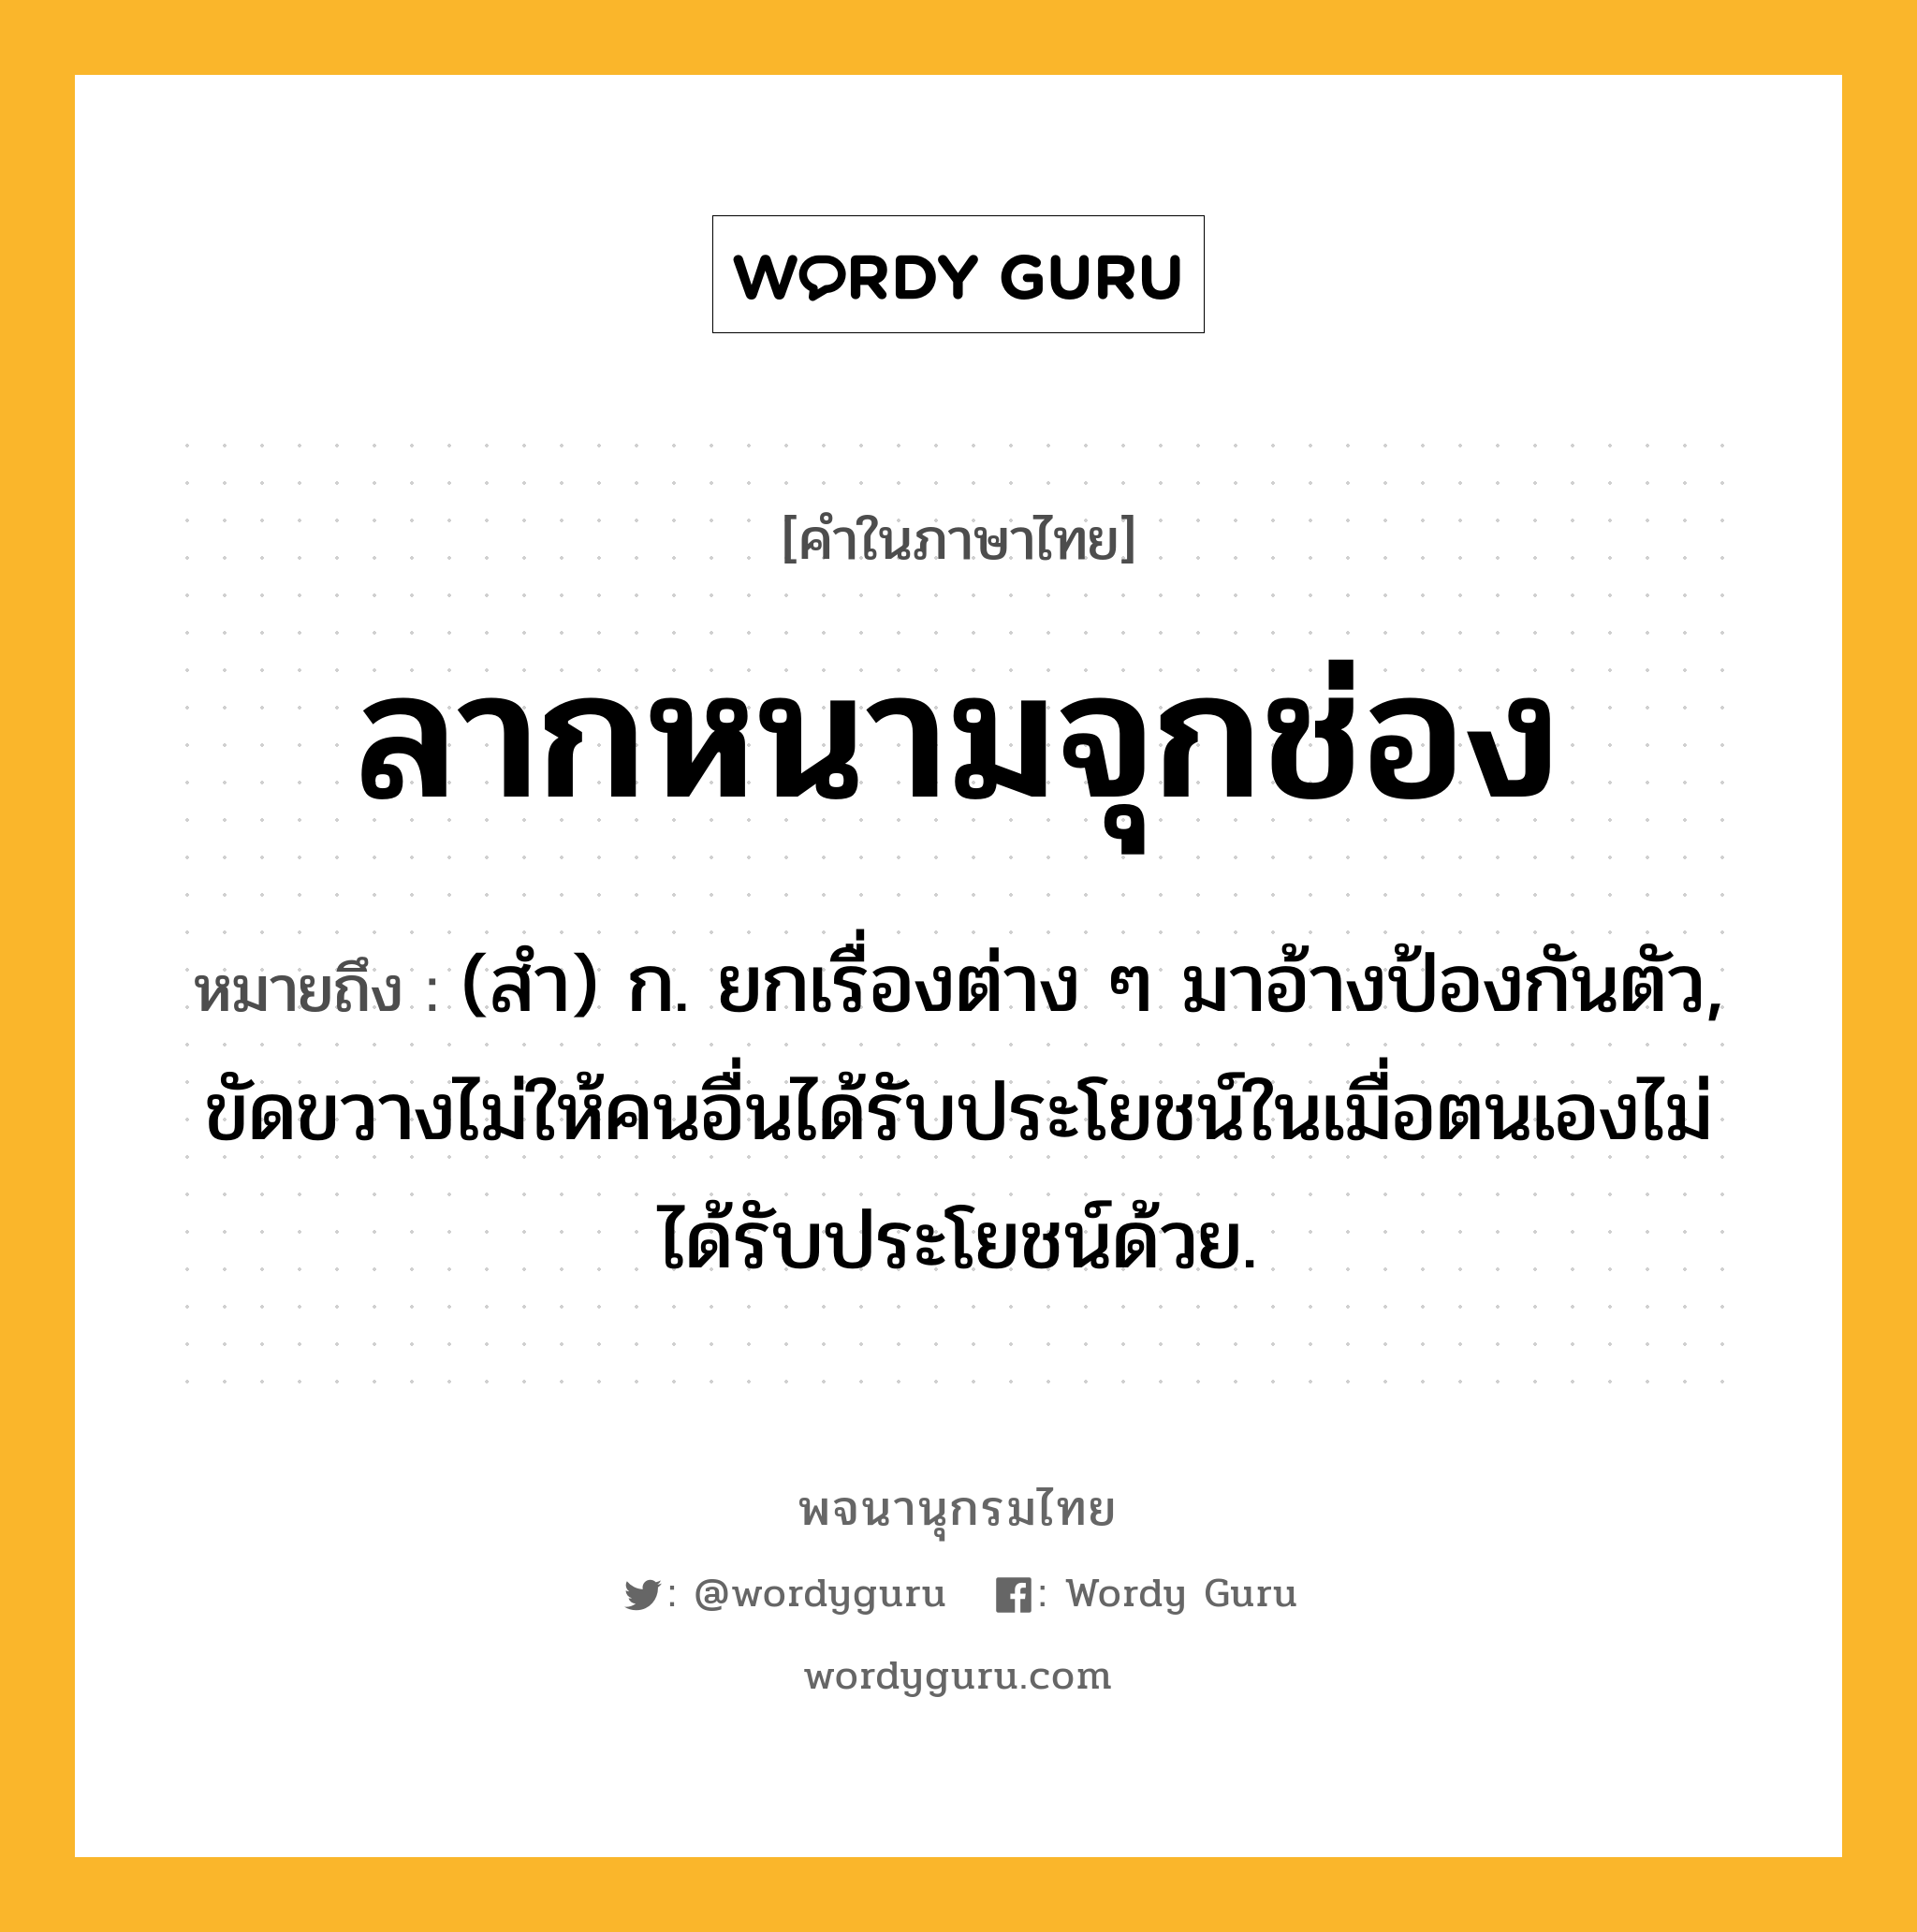 ลากหนามจุกช่อง ความหมาย หมายถึงอะไร?, คำในภาษาไทย ลากหนามจุกช่อง หมายถึง (สํา) ก. ยกเรื่องต่าง ๆ มาอ้างป้องกันตัว, ขัดขวางไม่ให้คนอื่นได้รับประโยชน์ในเมื่อตนเองไม่ได้รับประโยชน์ด้วย.